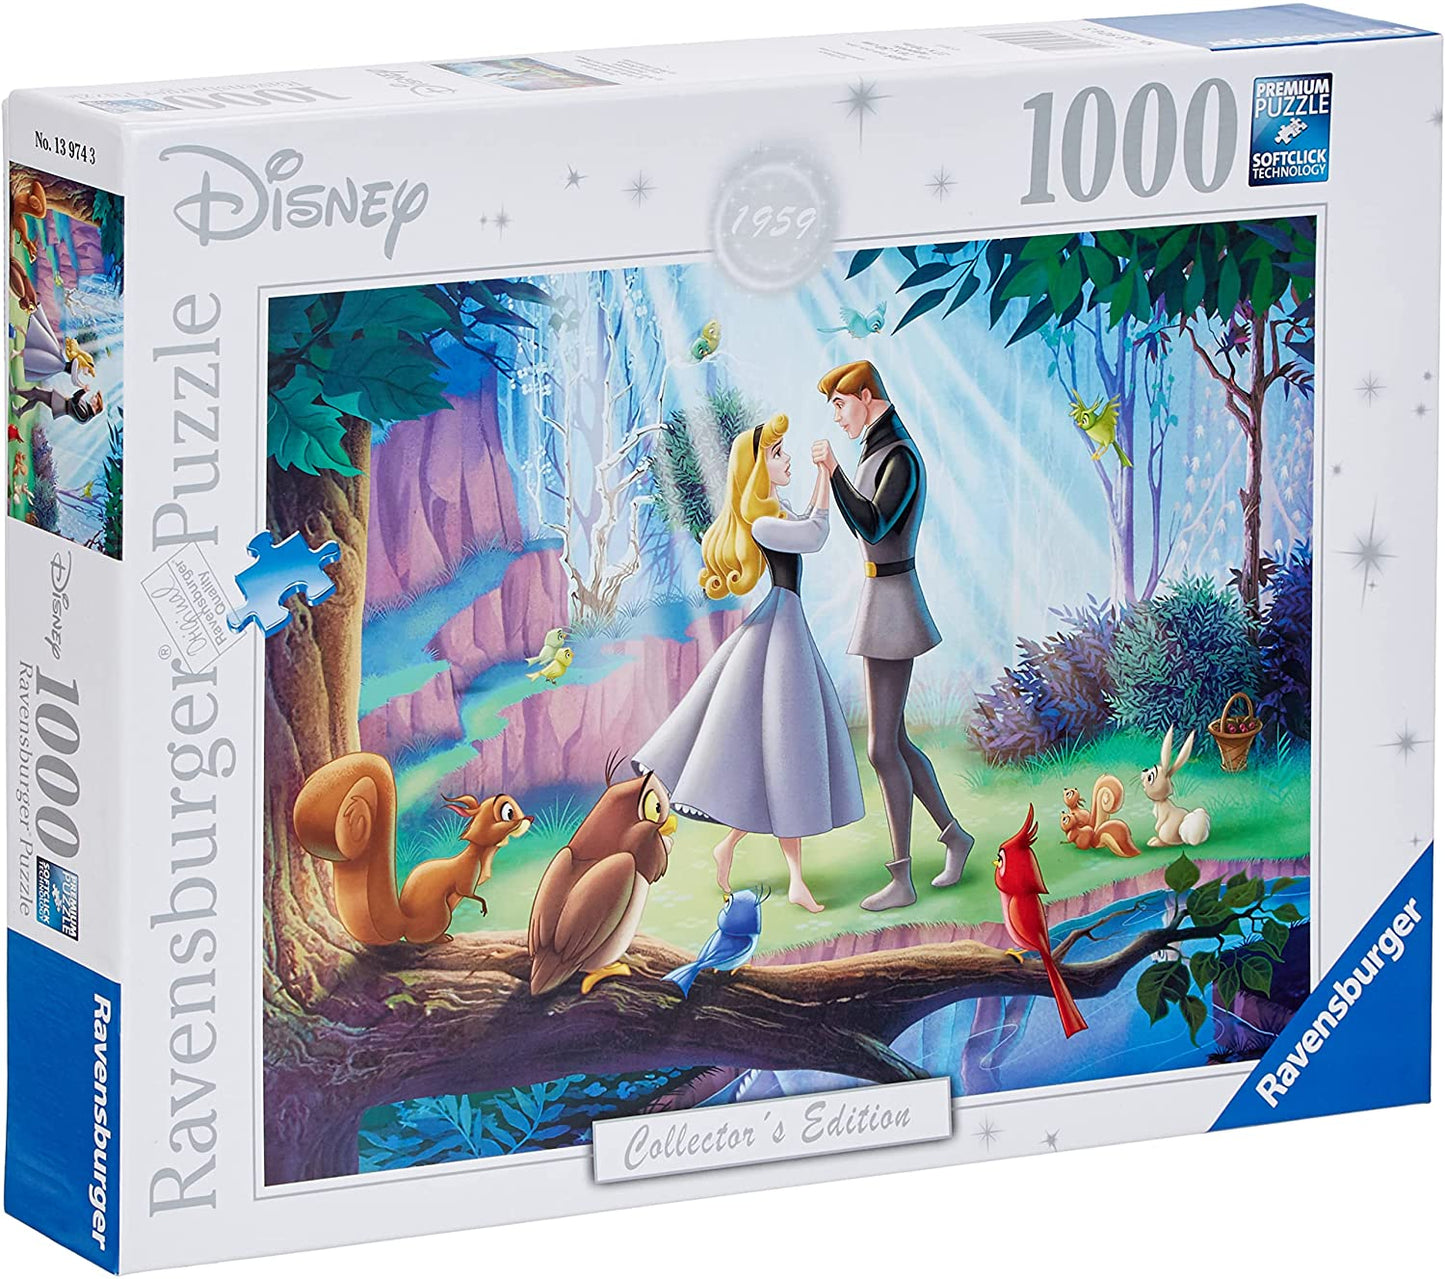 Tornerose af Disney Collector's Edition, 1000 brikker puslespil